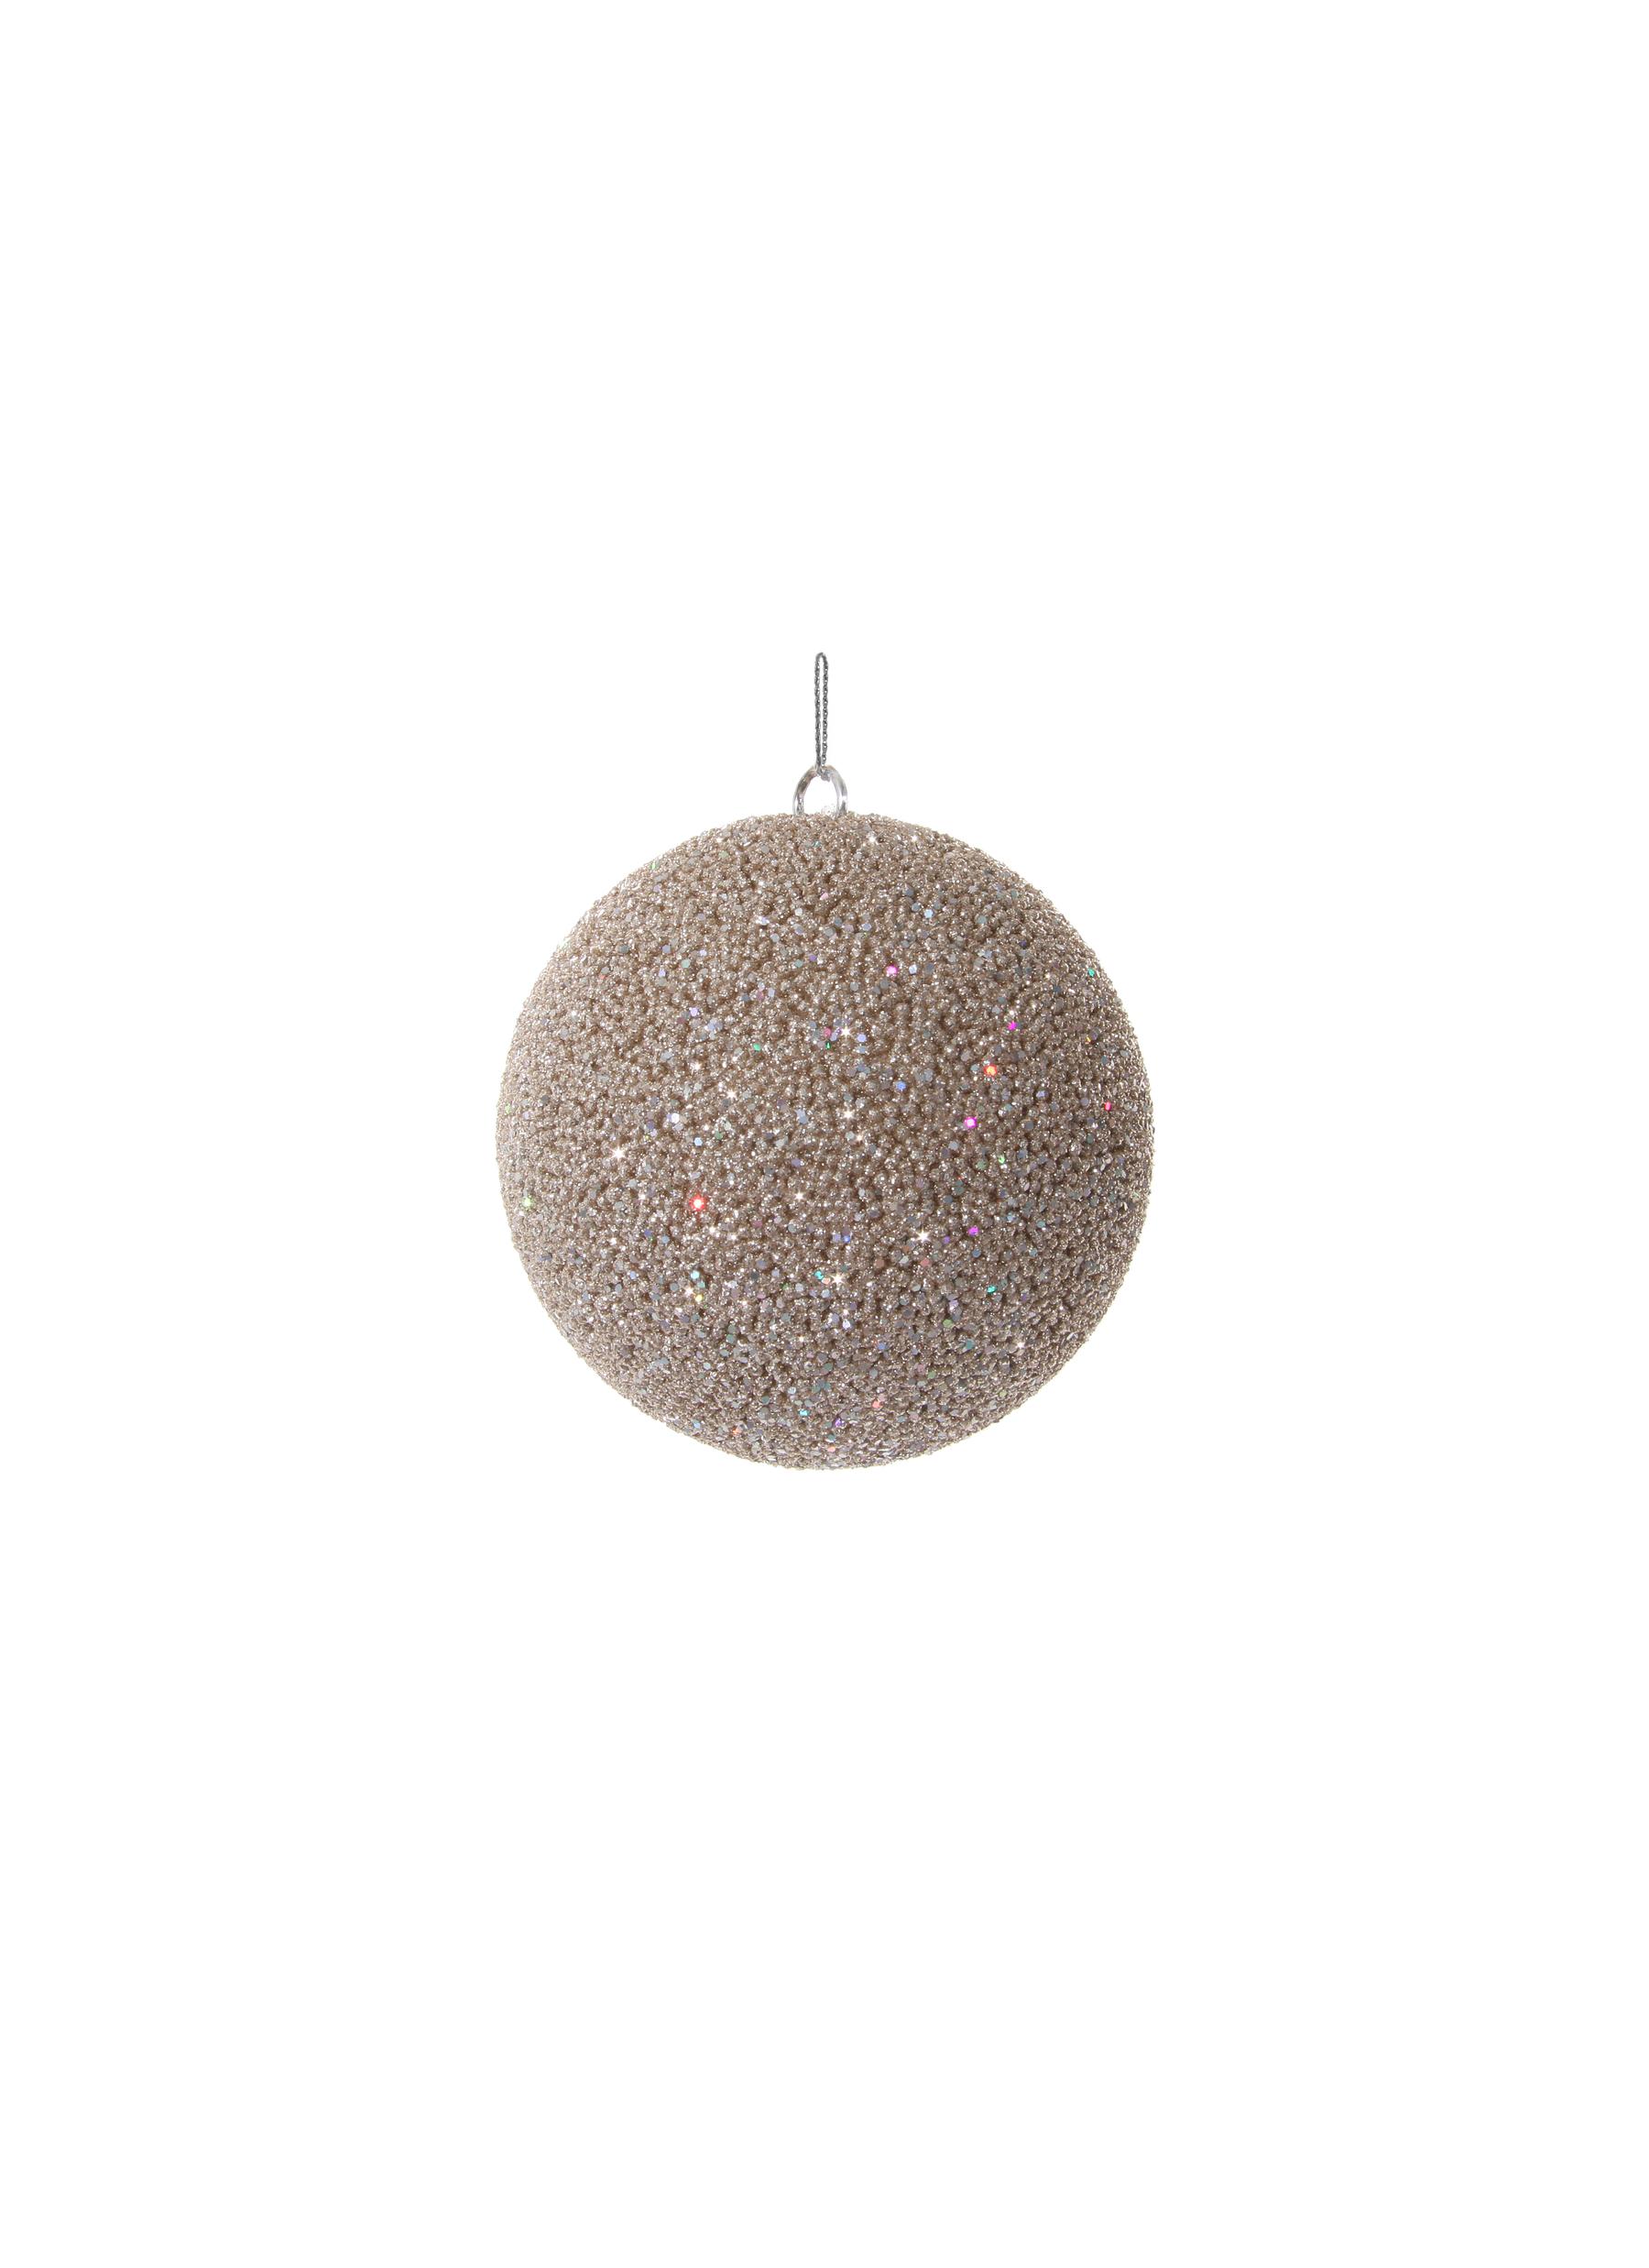 Shishi Bead Glass Ball Christmas Ornament